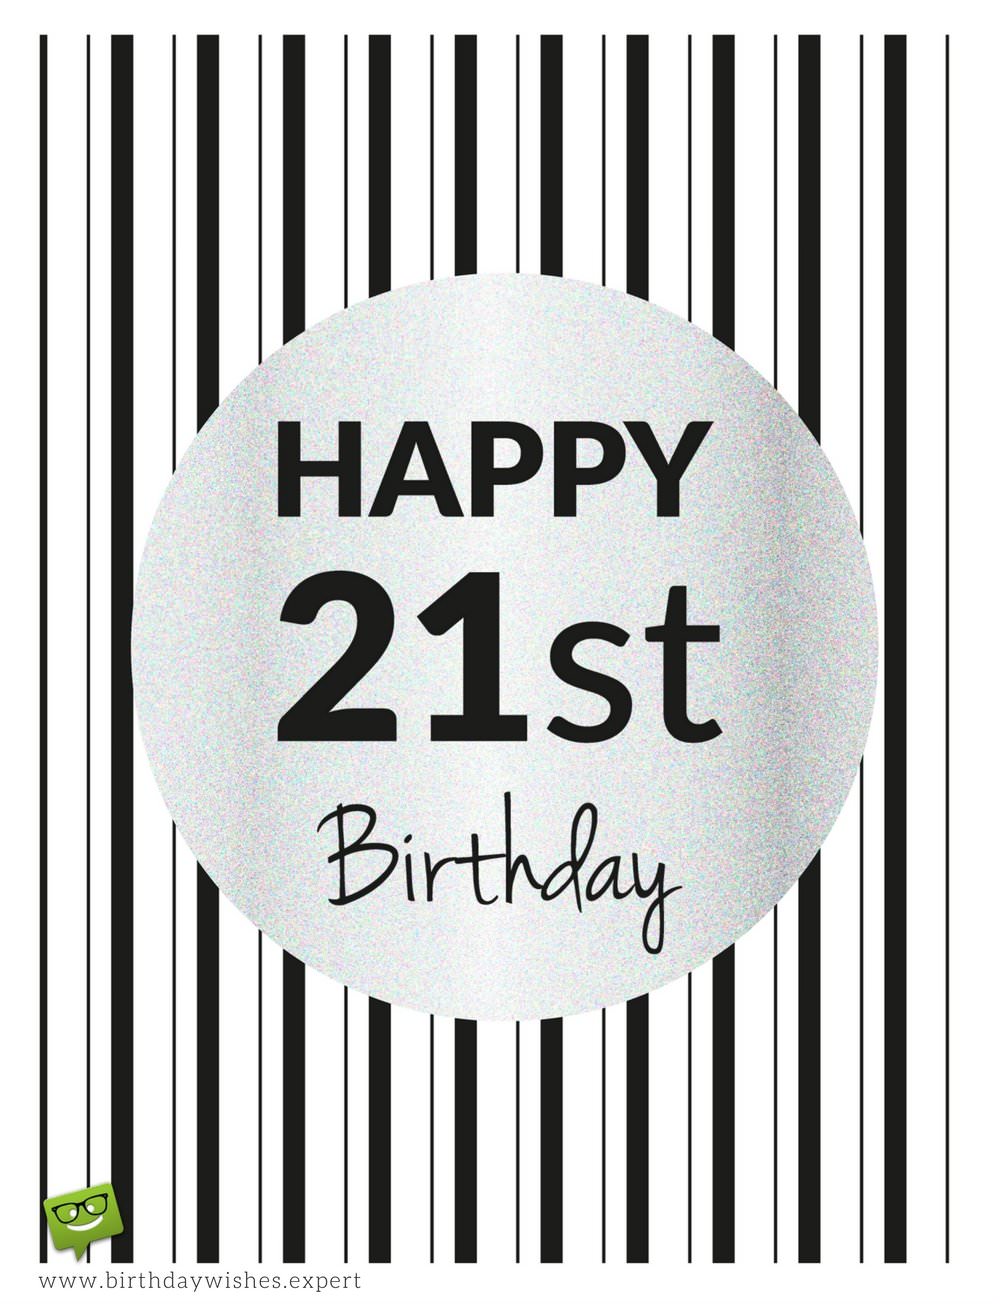 Birthday Wishes for 21st Birthday